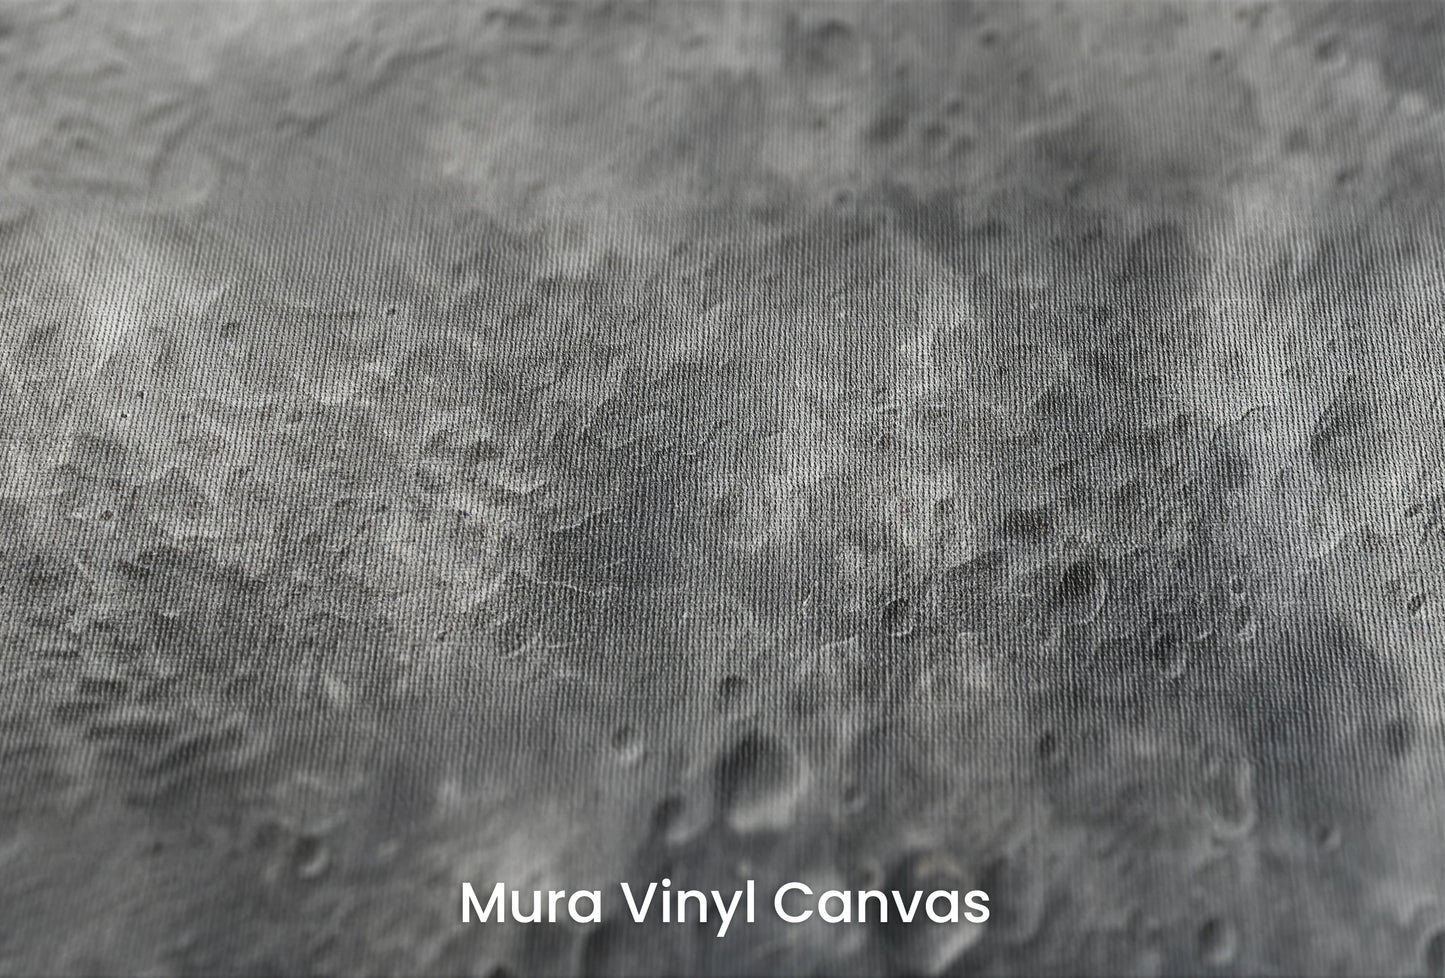 Zbliżenie na artystyczną fototapetę o nazwie Mercury's Texture na podłożu Mura Vinyl Canvas - faktura naturalnego płótna.